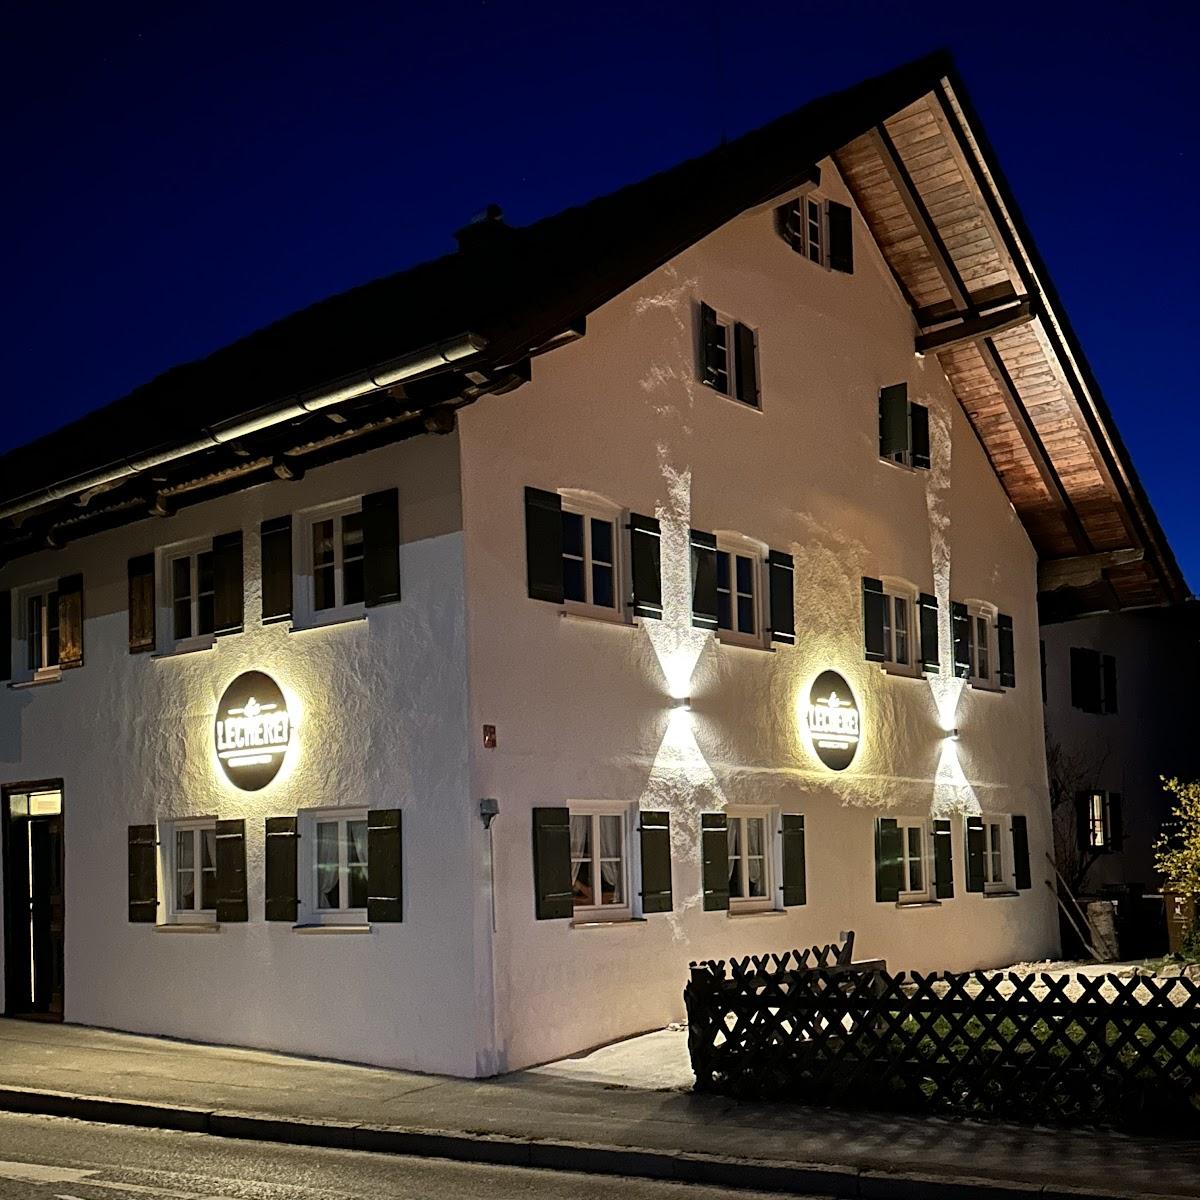 Restaurant "die Lecherei" in Lechbruck am See